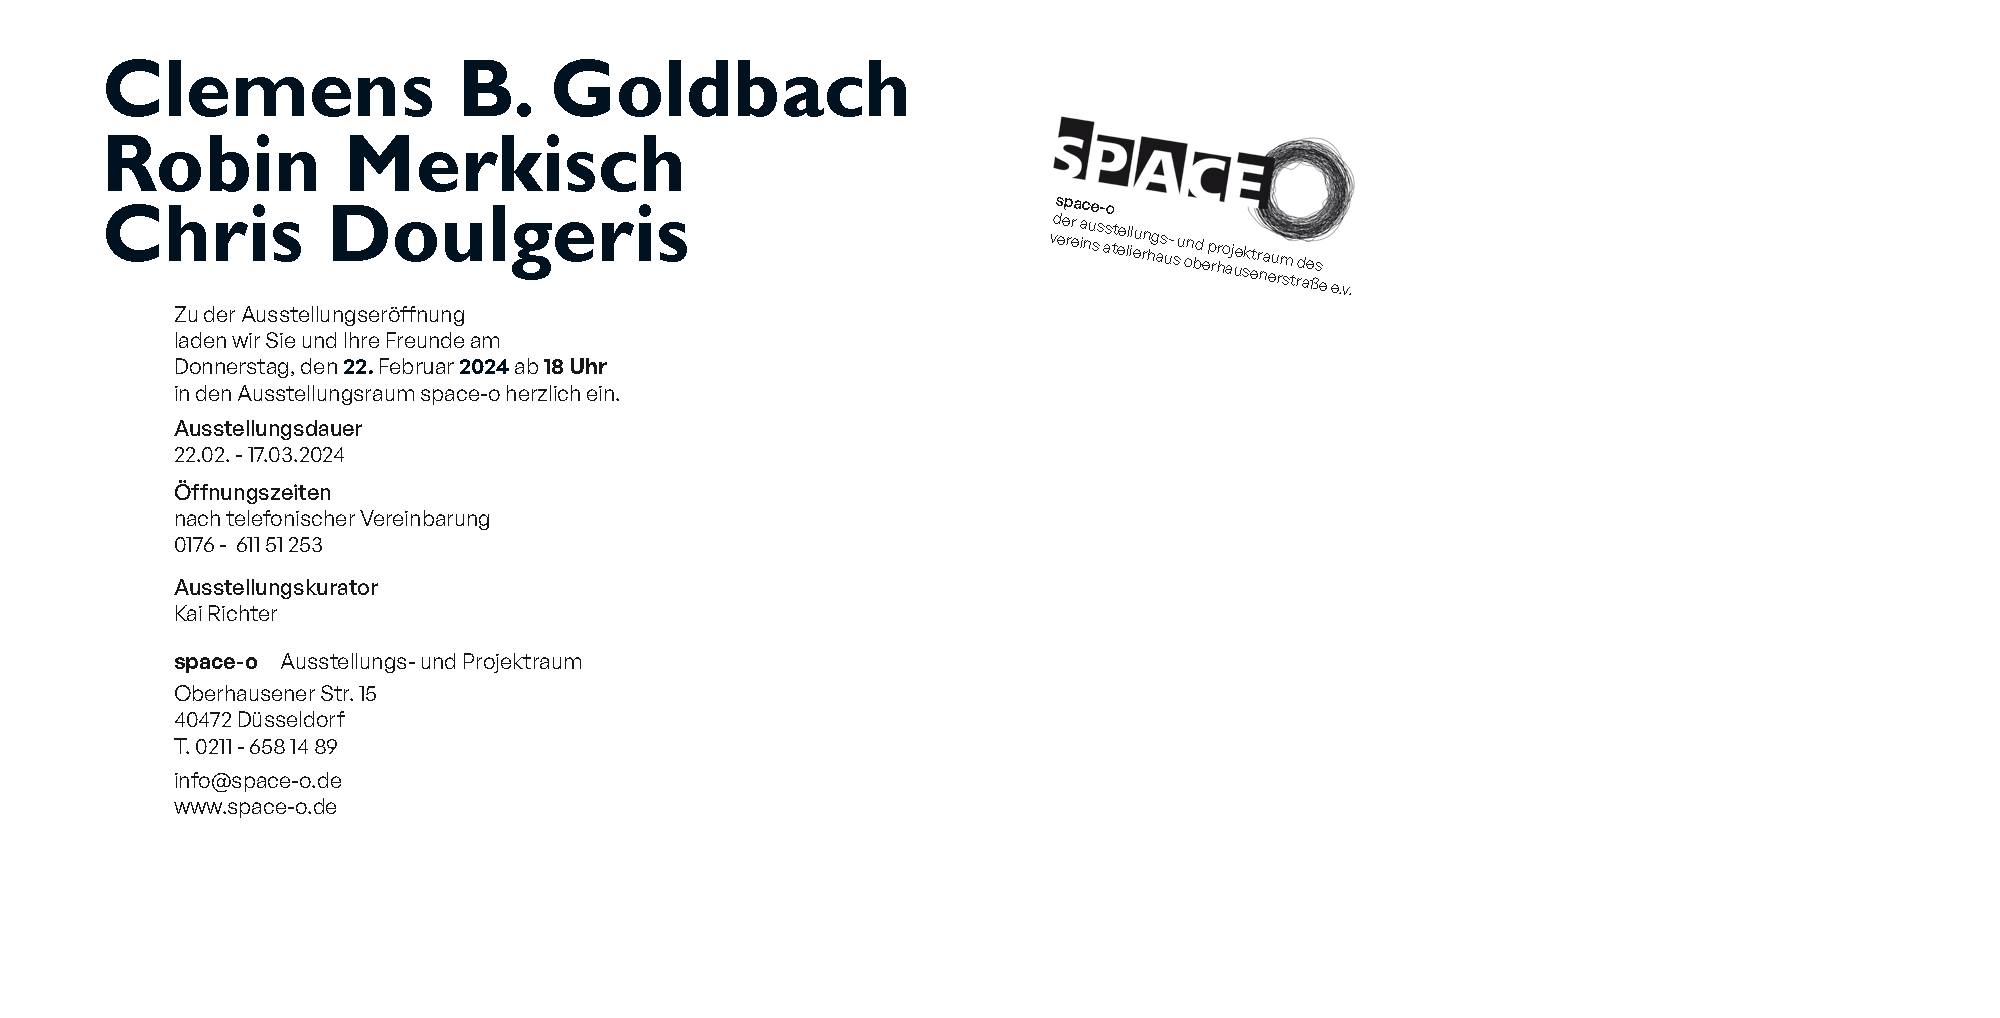 space-o ausstellung 02-2024, Goldbach, Merkisch, Doulgeris